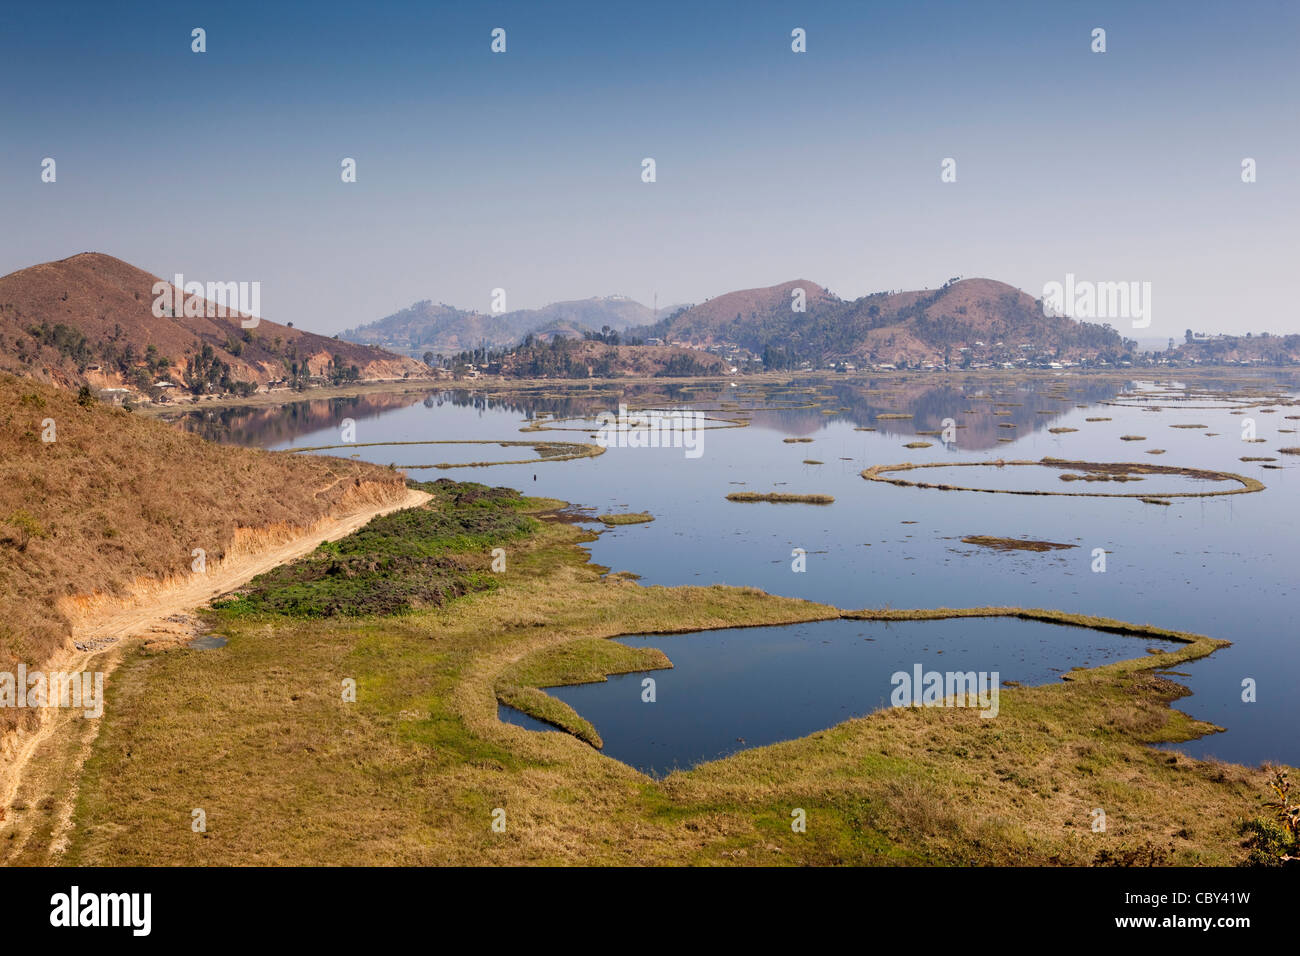 Indien, Manipur, Imphal, Loktak See, kreisförmige schwimmenden Inseln aus Wasserhyazinthe Unkraut erstellt Stockfoto